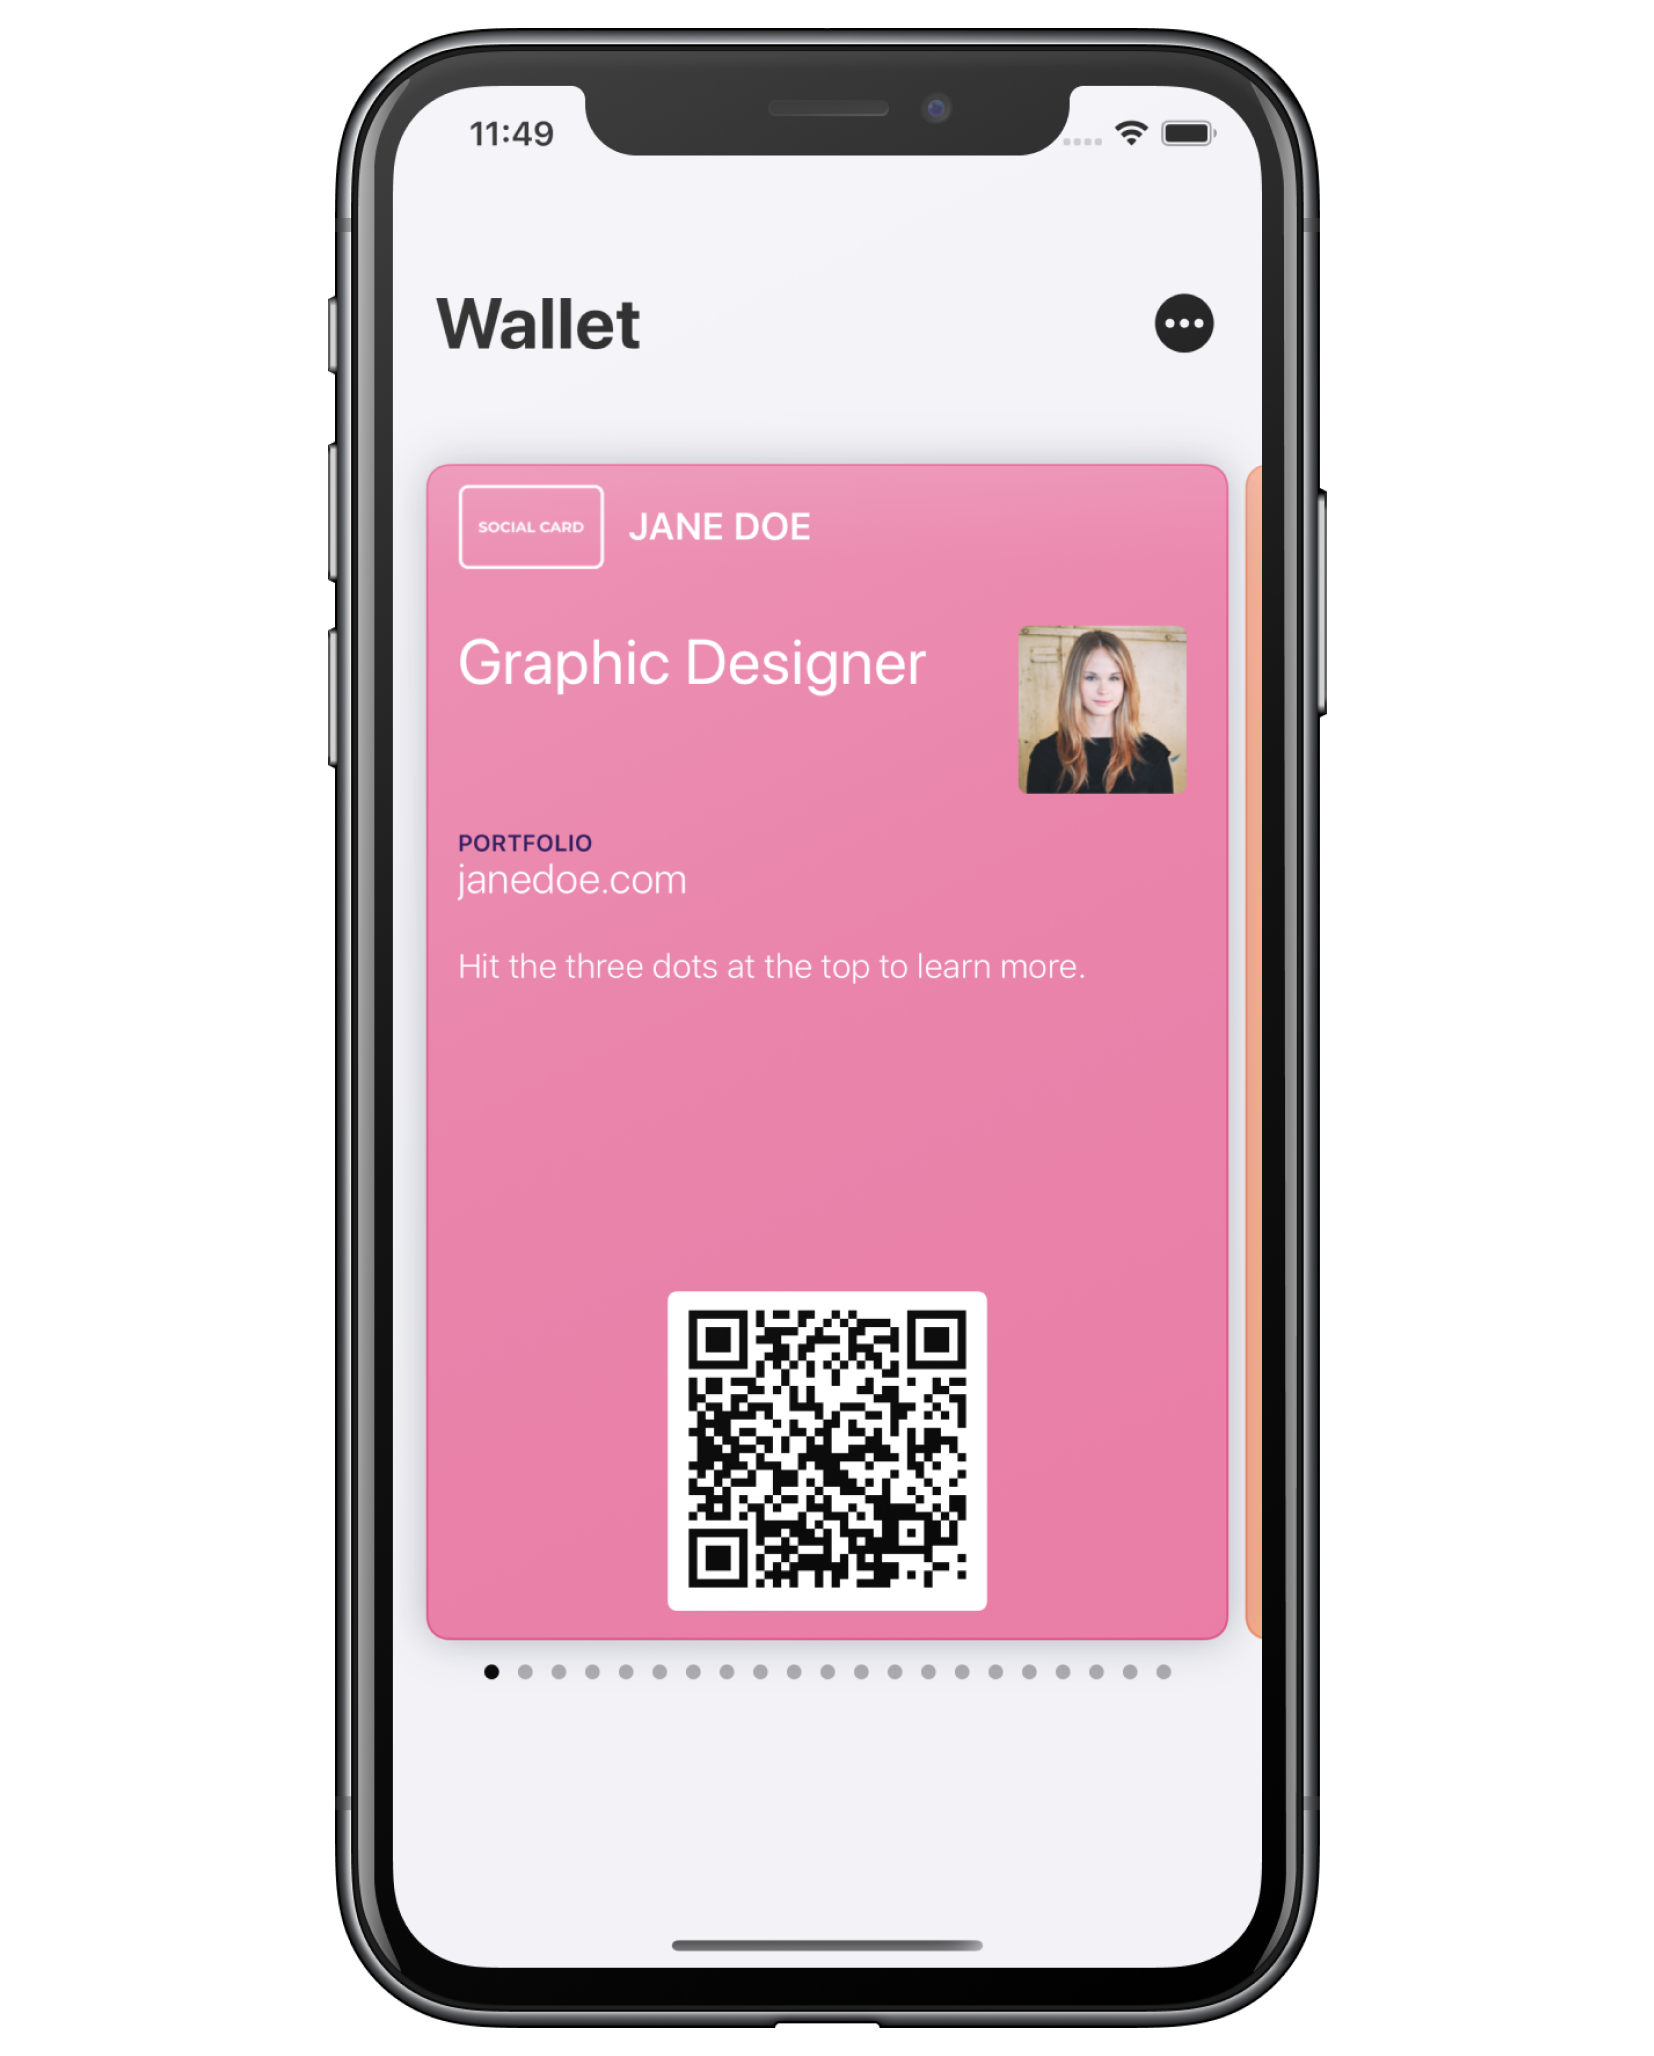 White Label Mobile Wallet Platform To Build Mobile Wallet App